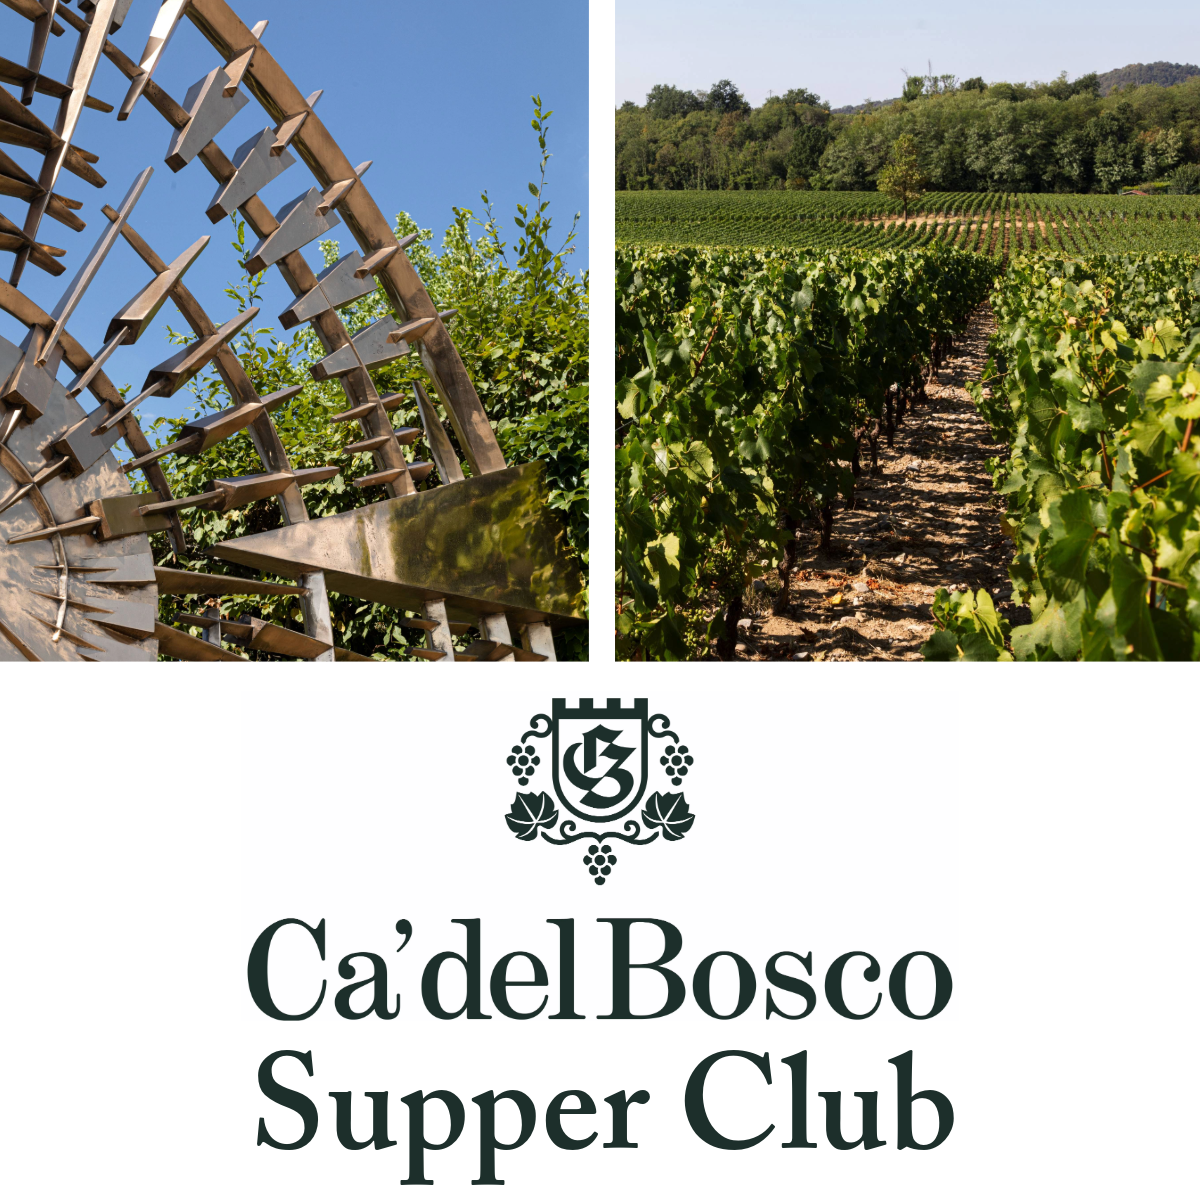 Ca' del Bosco Supper Club, Thursday 7th March 7pm